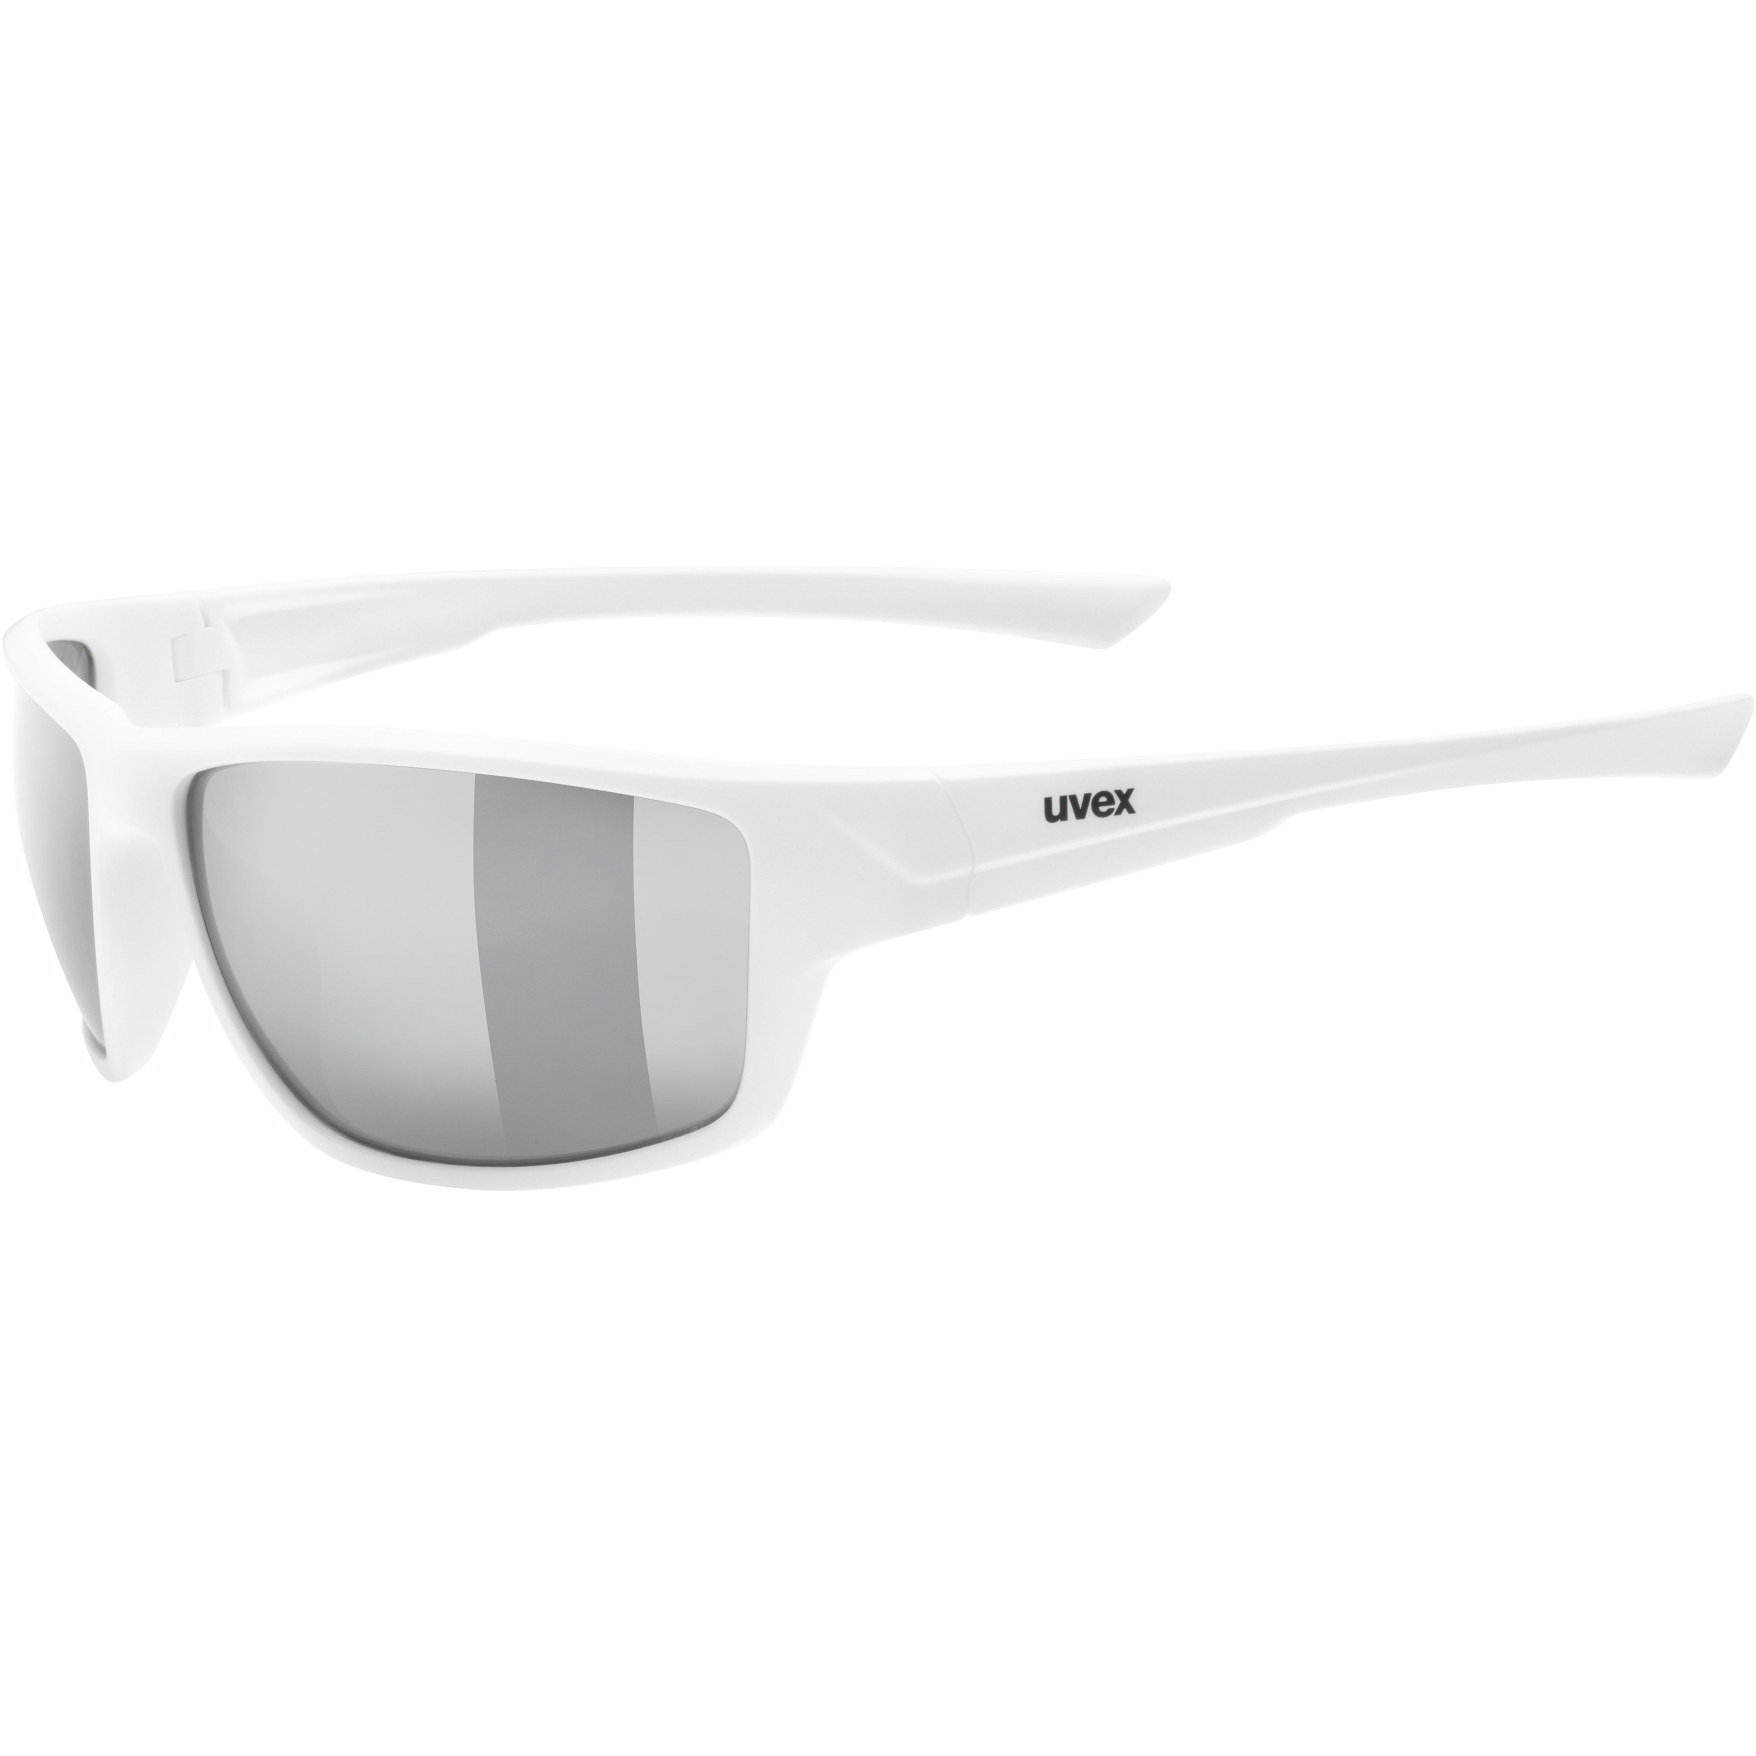 Produktbild von Uvex sportstyle 230 Brille - white mat/litemirror silver